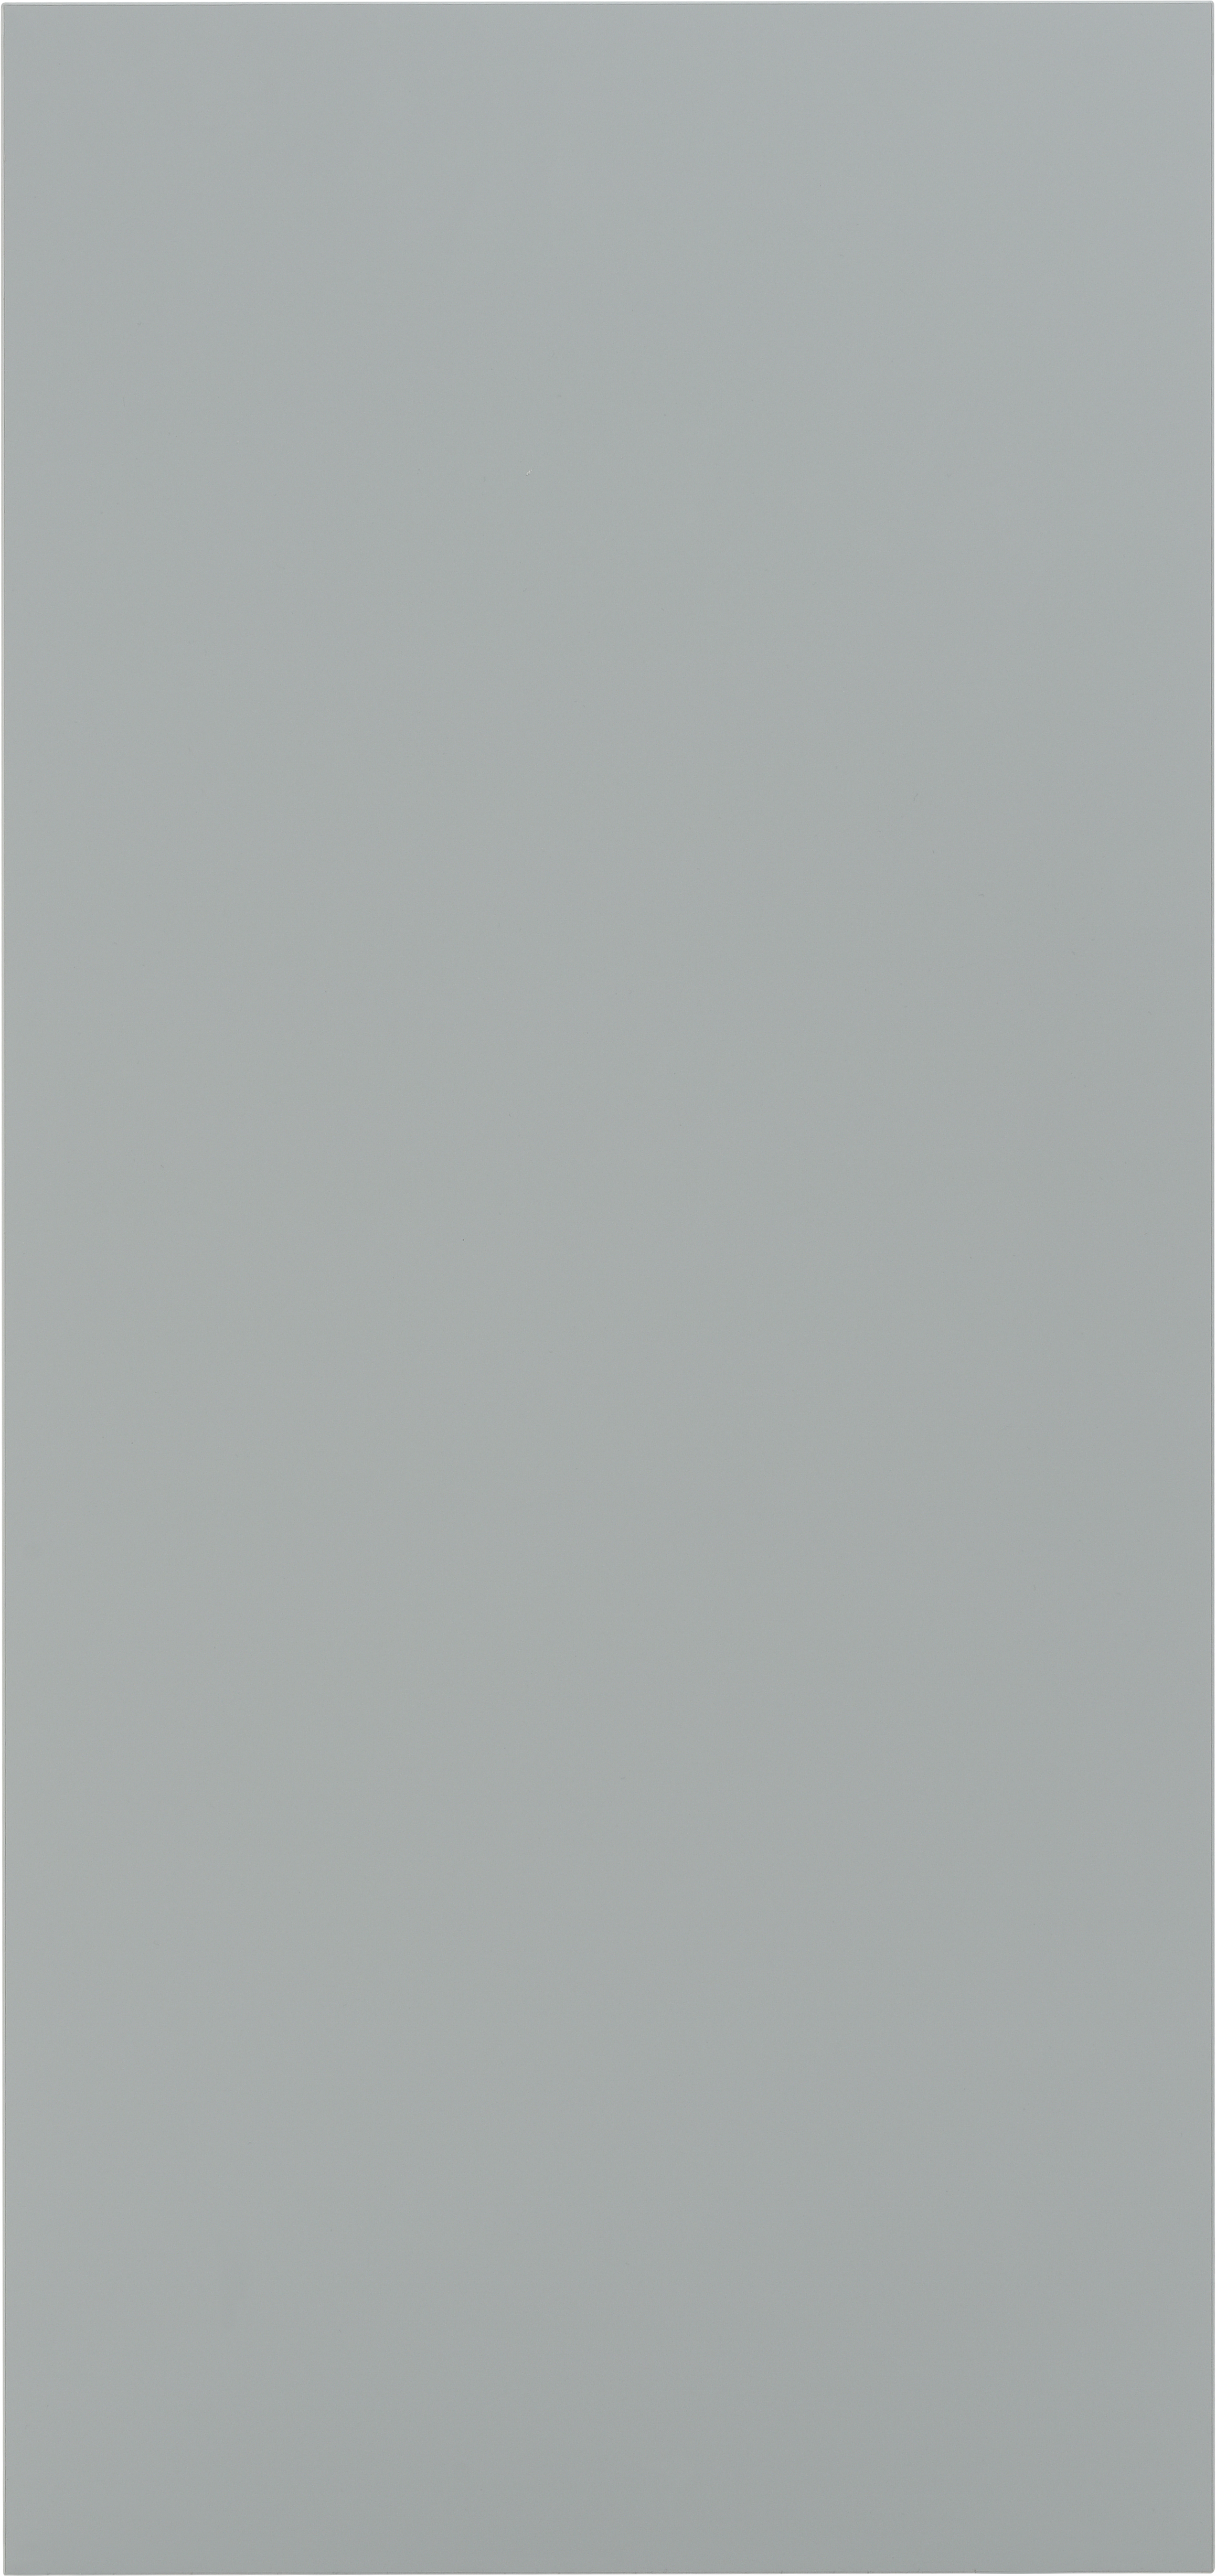 Costado delinia id mikonos verde brillo 60x76,08 cm